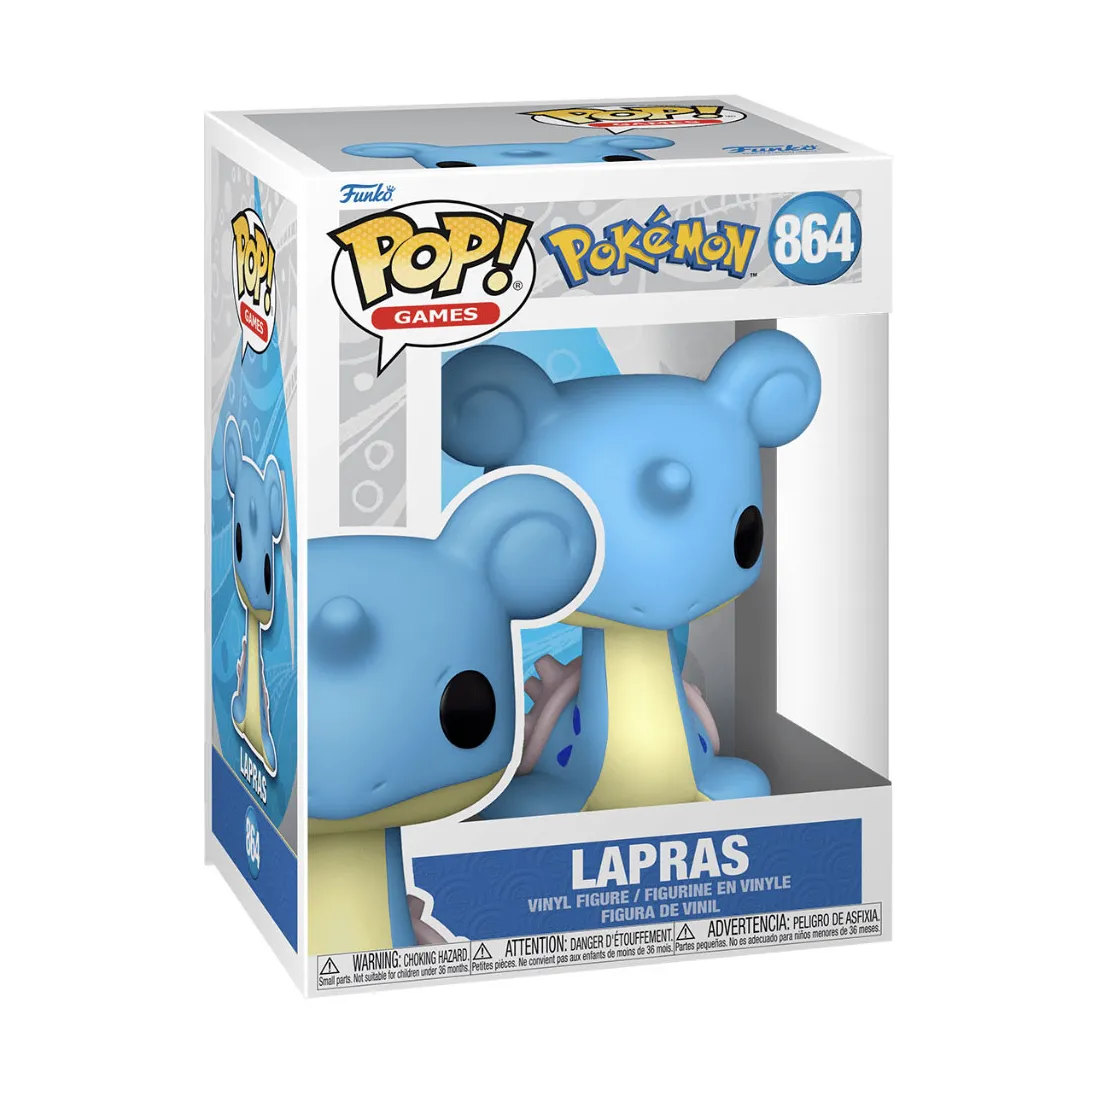 Lapras 864 Figure, Pokémon Figure